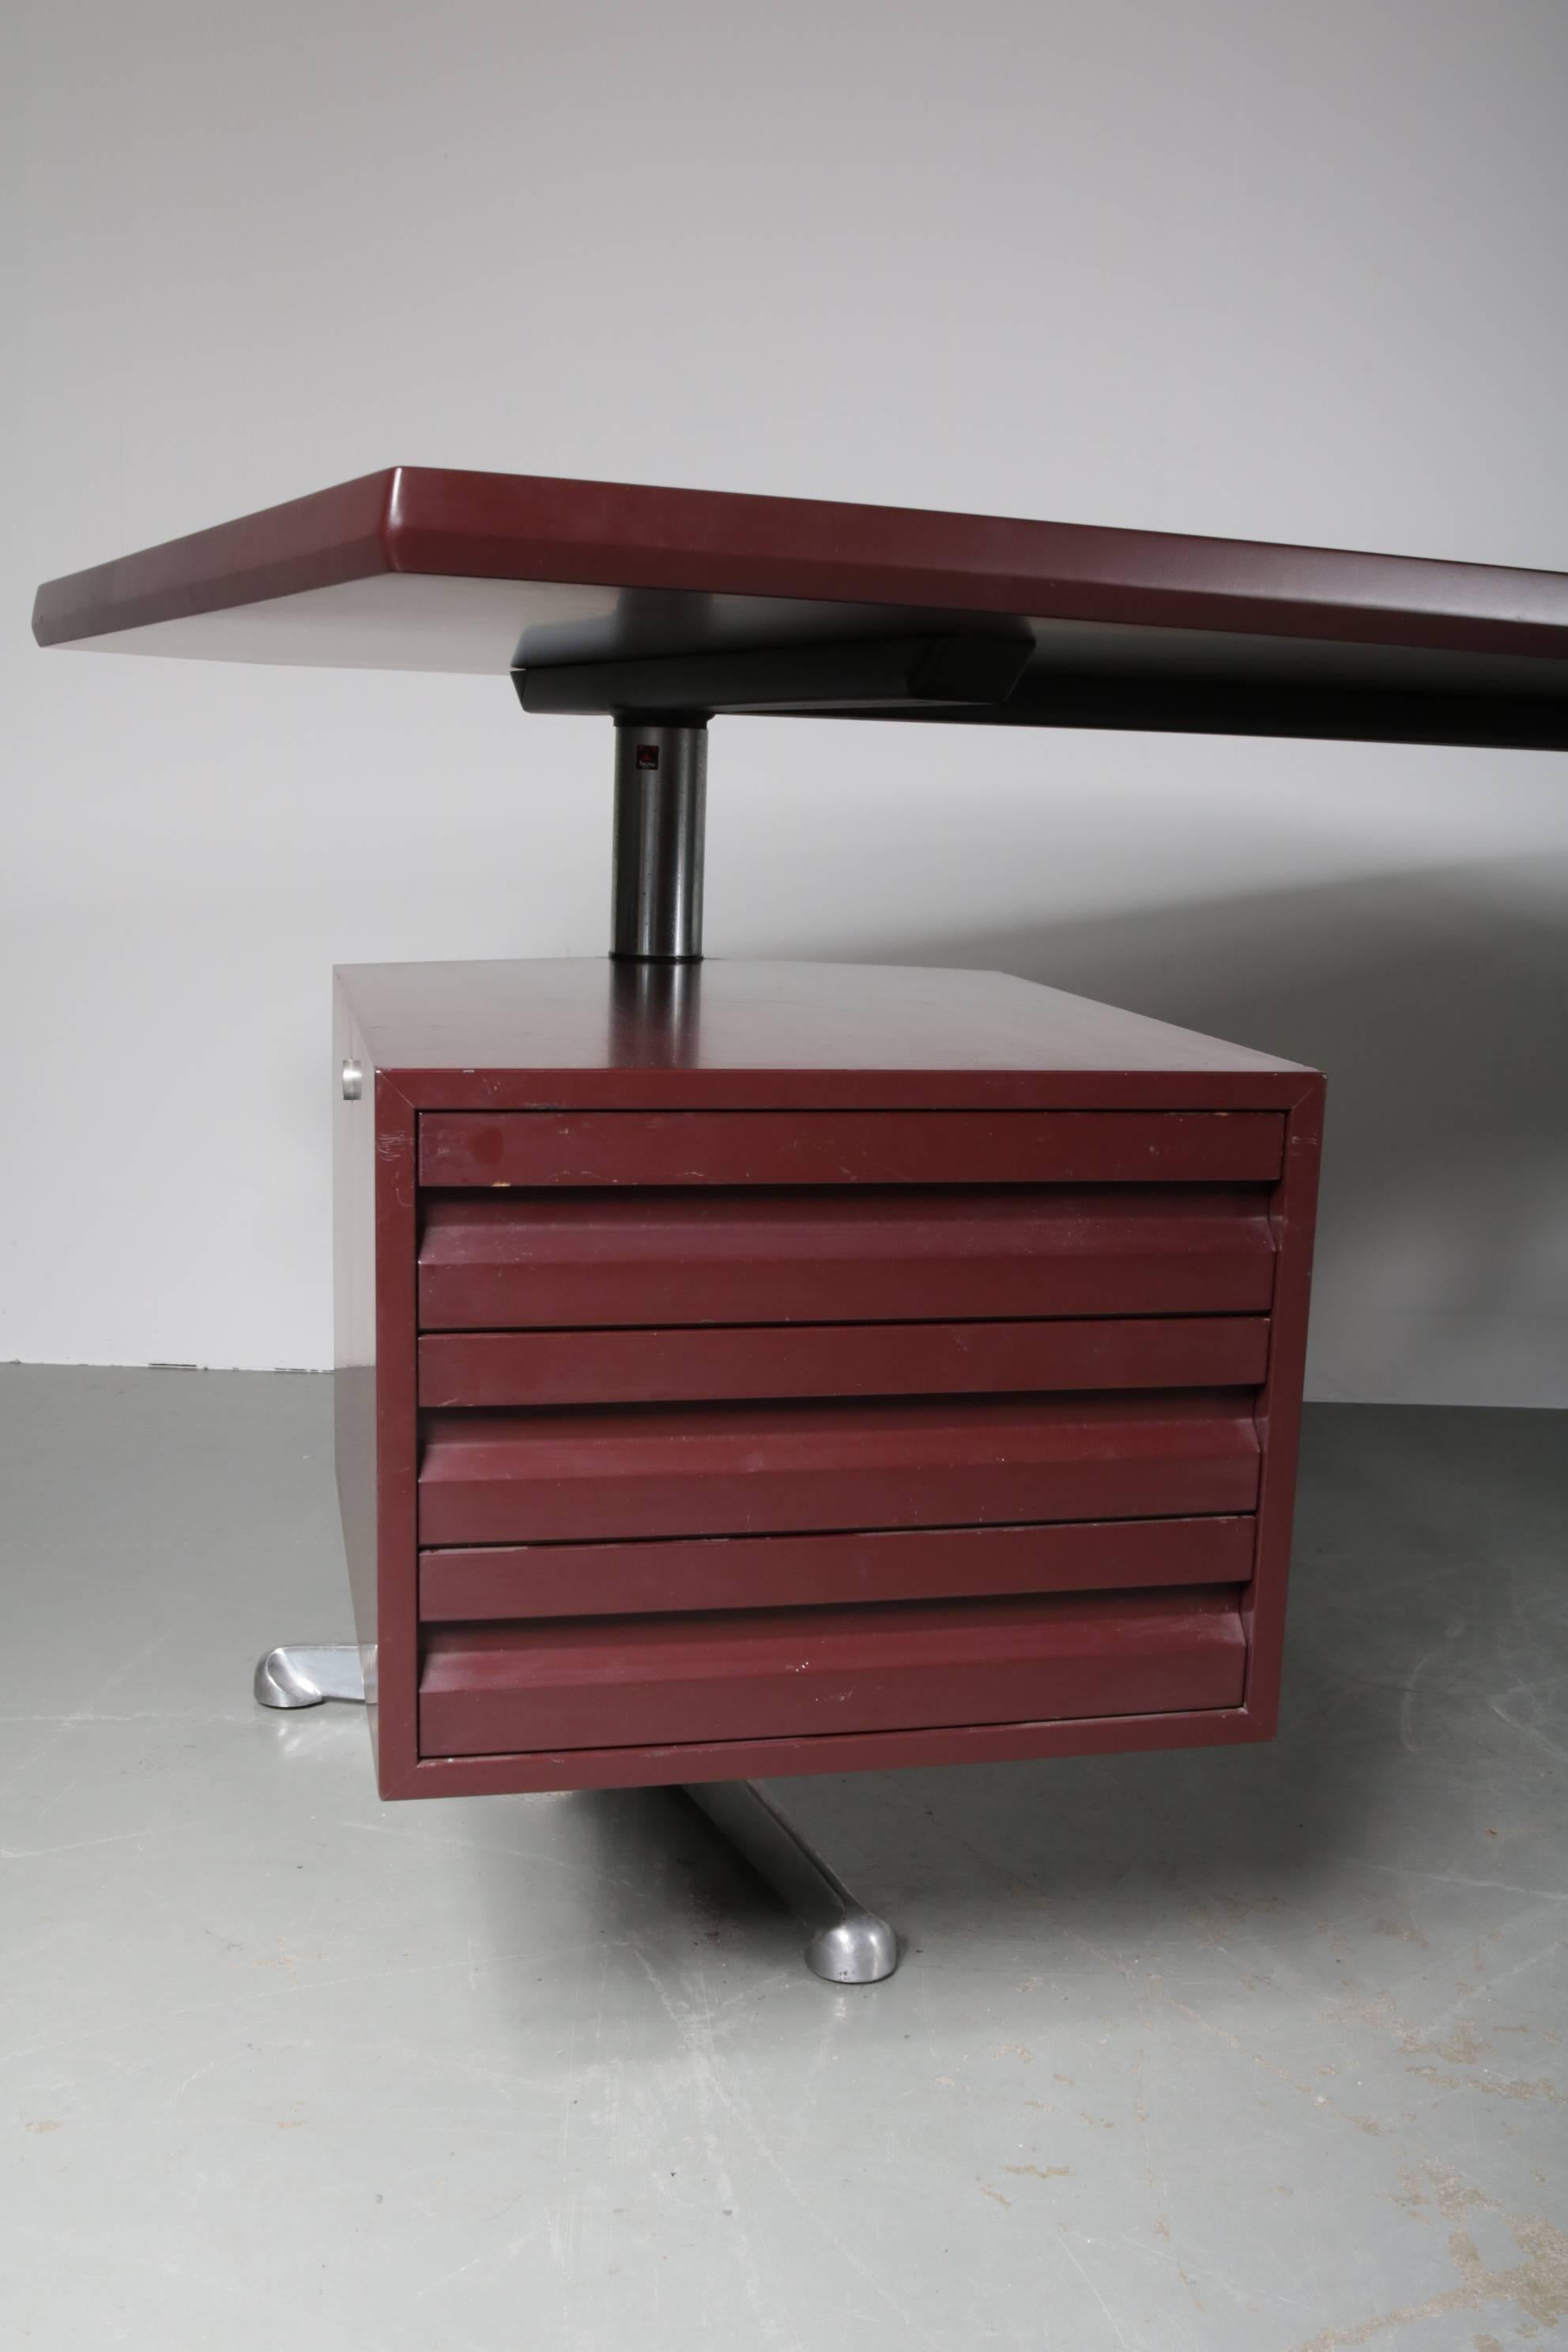 Schöner, großer Schreibtisch für Führungskräfte, entworfen von Osvaldo Borsani, hergestellt von Tecno Milano in Italien, um 1950.

Dieser auffällige Schreibtisch verfügt über ein einzigartiges Design mit integrierter Schublade, die in der Position